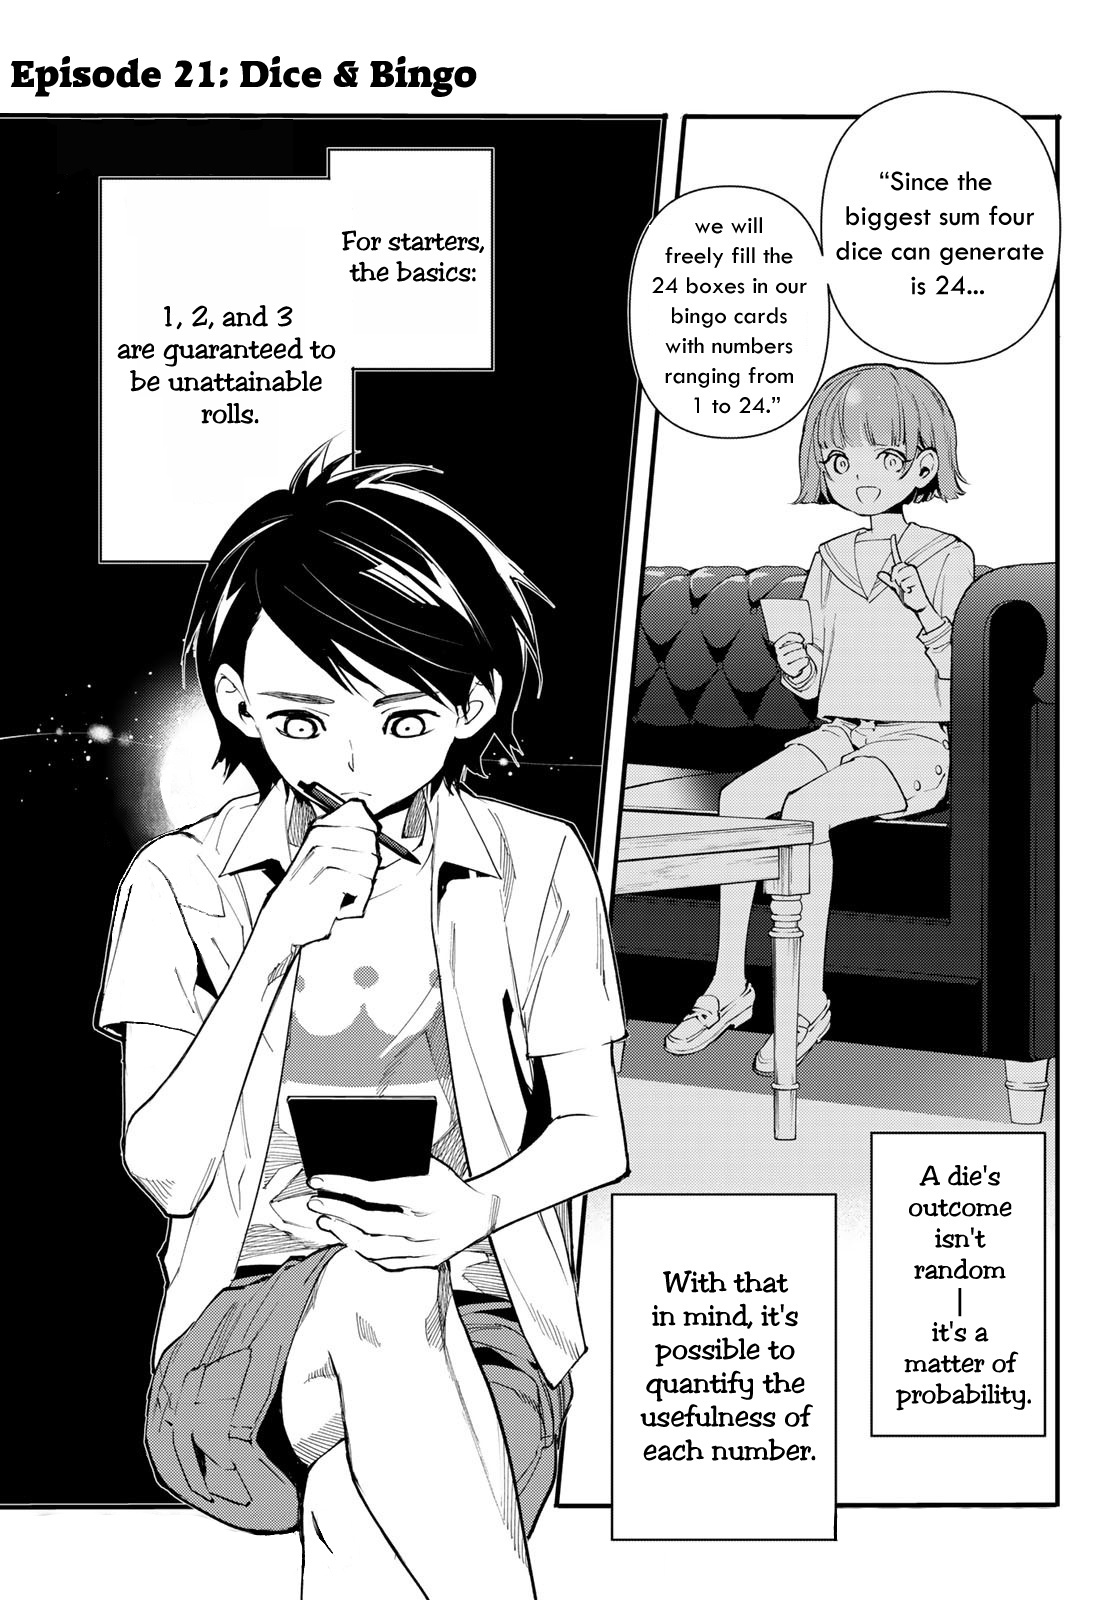 Shin Honkaku Mahou Shoujo Risuka - Page 1